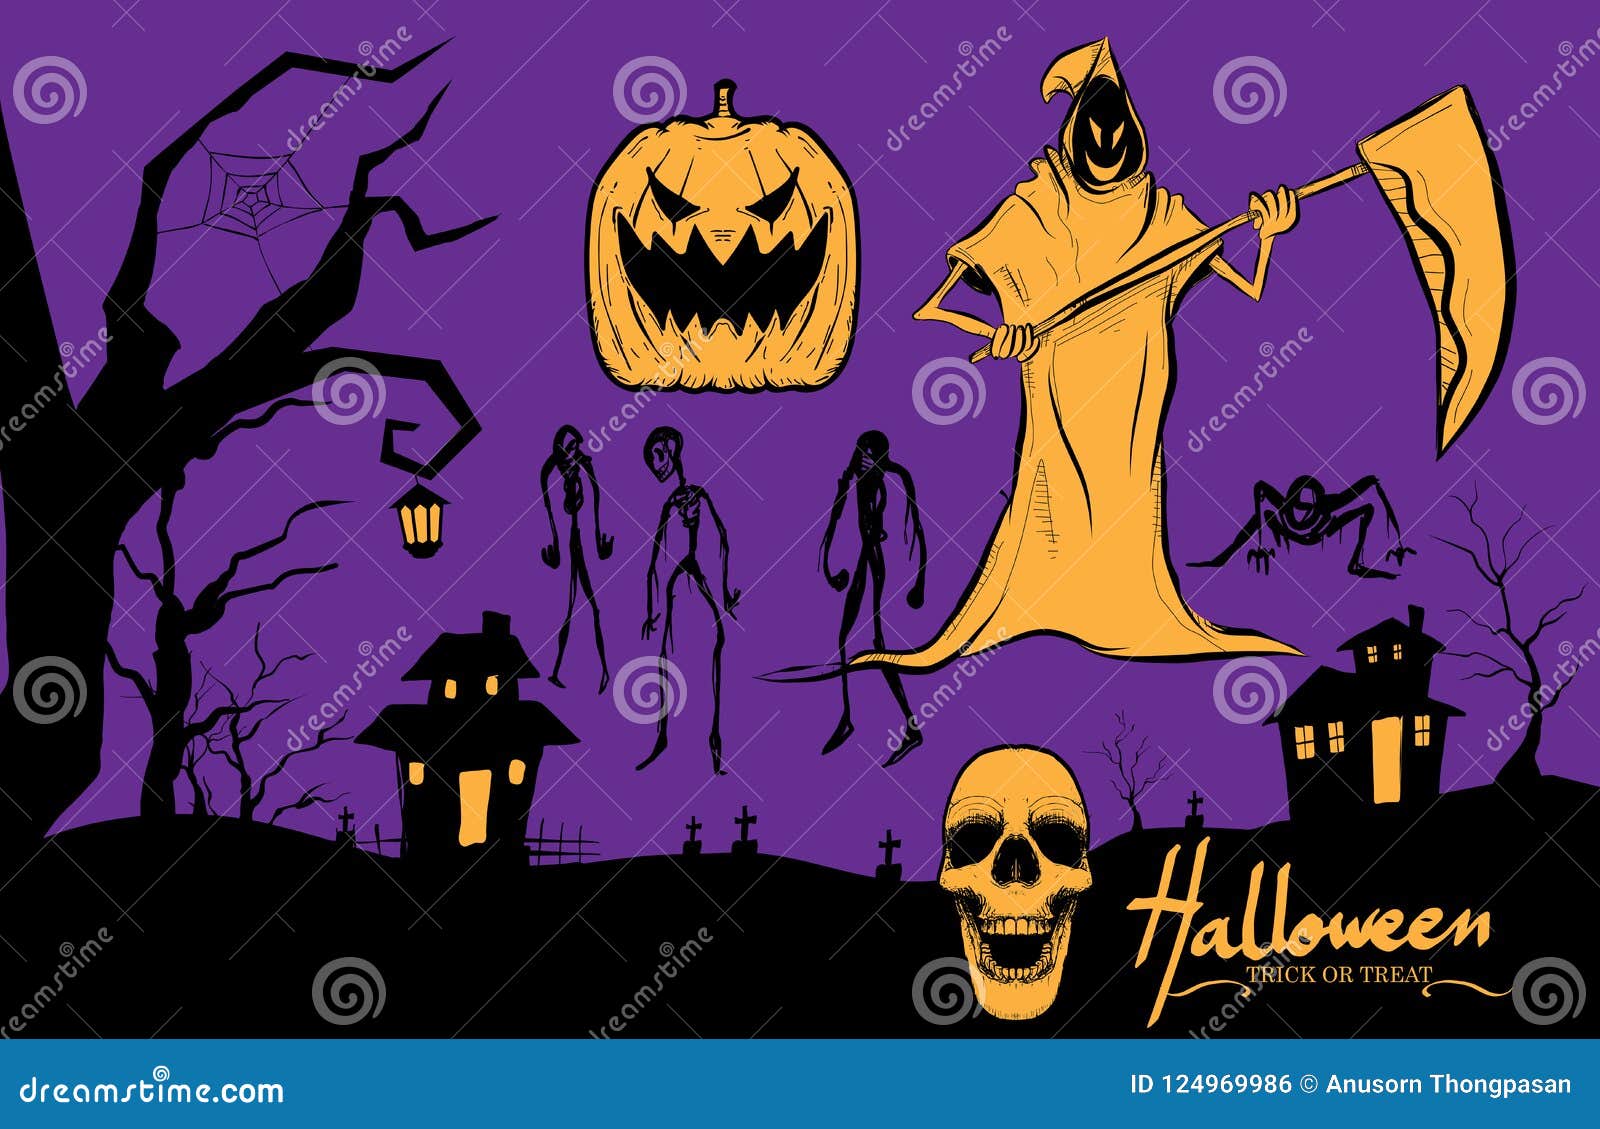 Personagem de desenho animado fantasma de halloween rabisca